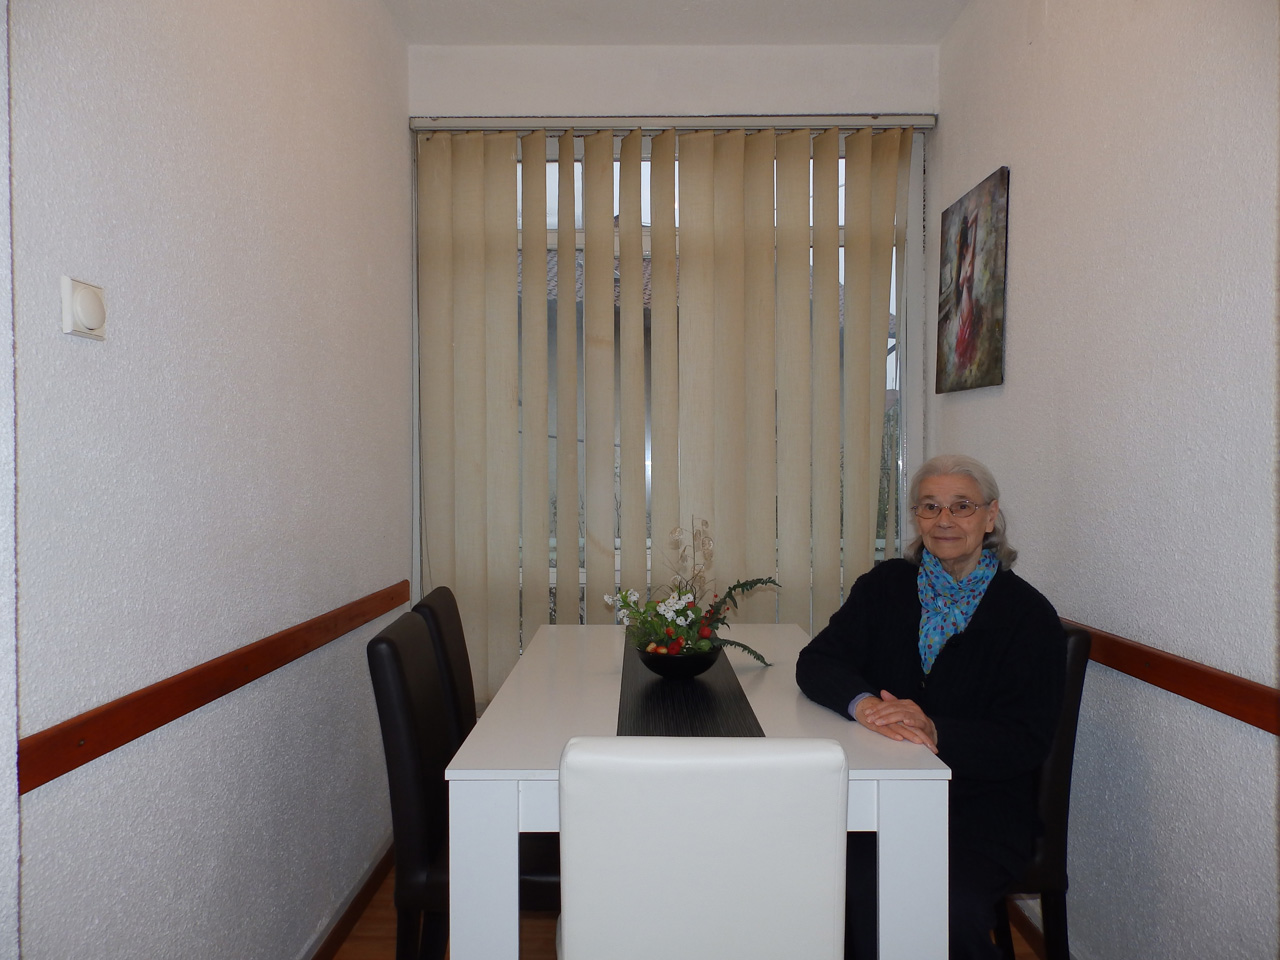 Photo 8 - HOME FOR OLD - ZARKOVACKI VRT Homes and care for the elderly Belgrade